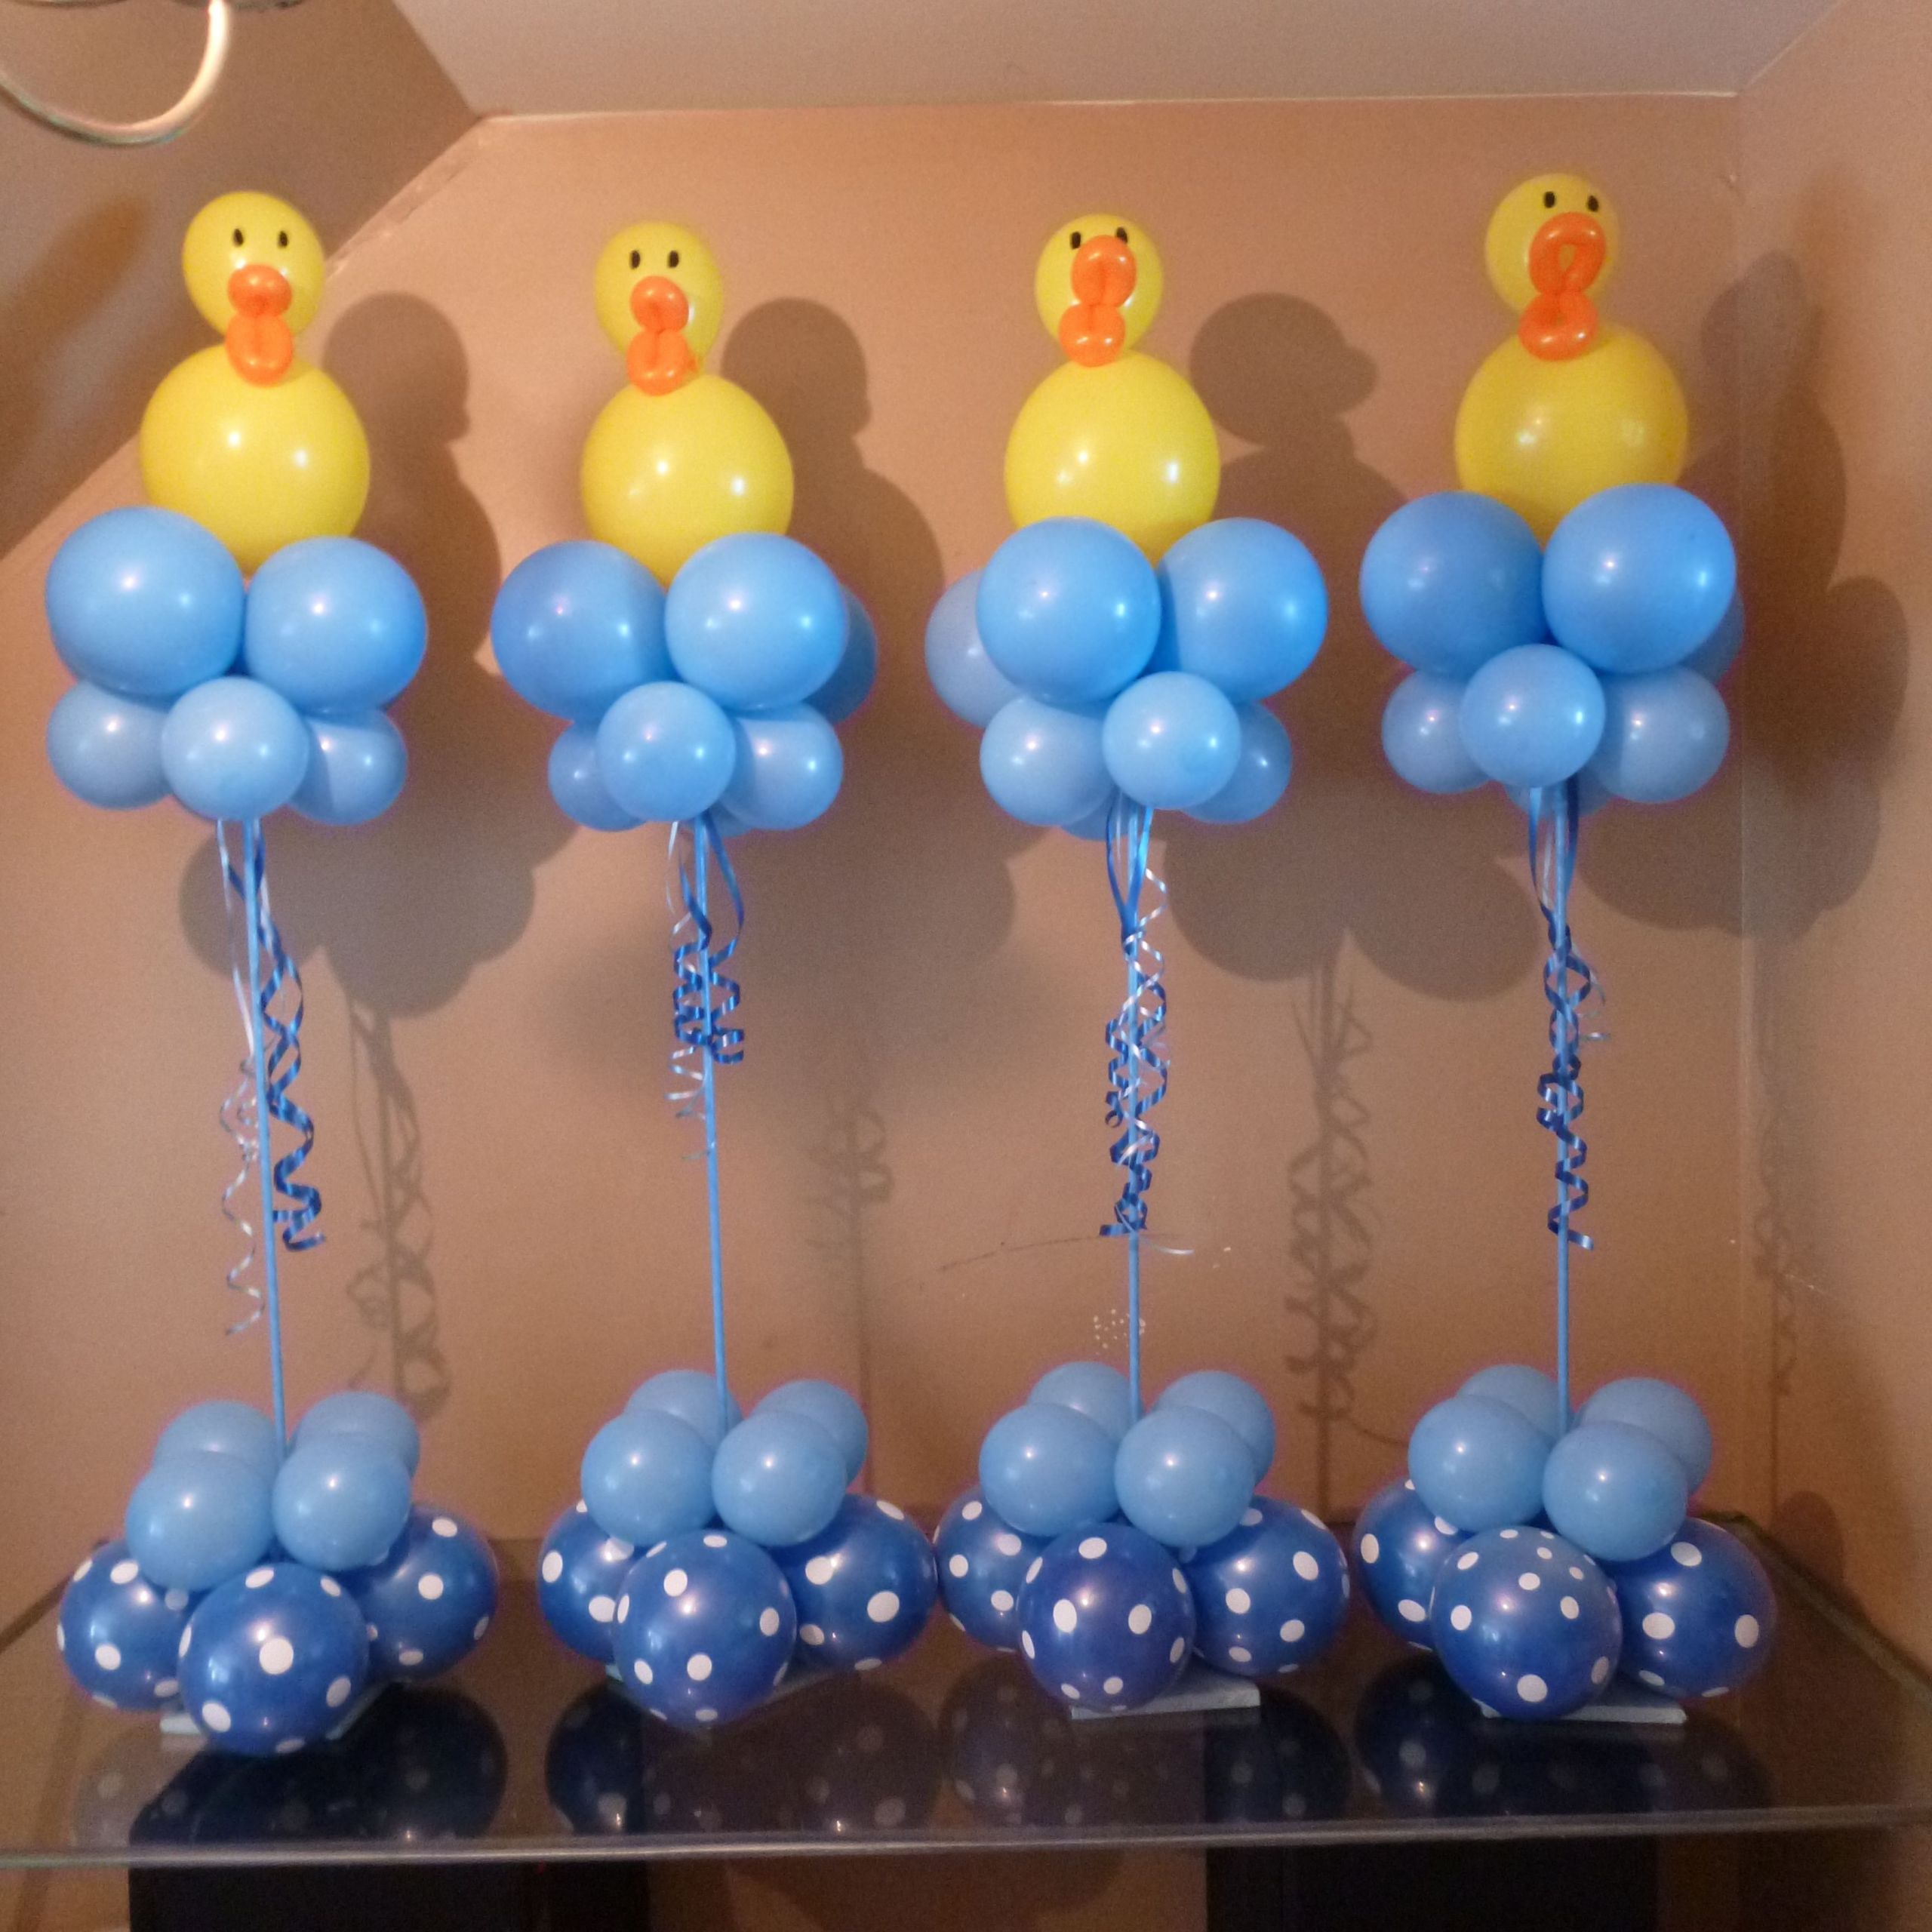 Balloon Decoration Baby Shower Ideas
 Balloon decorations Baby Shower Ideas